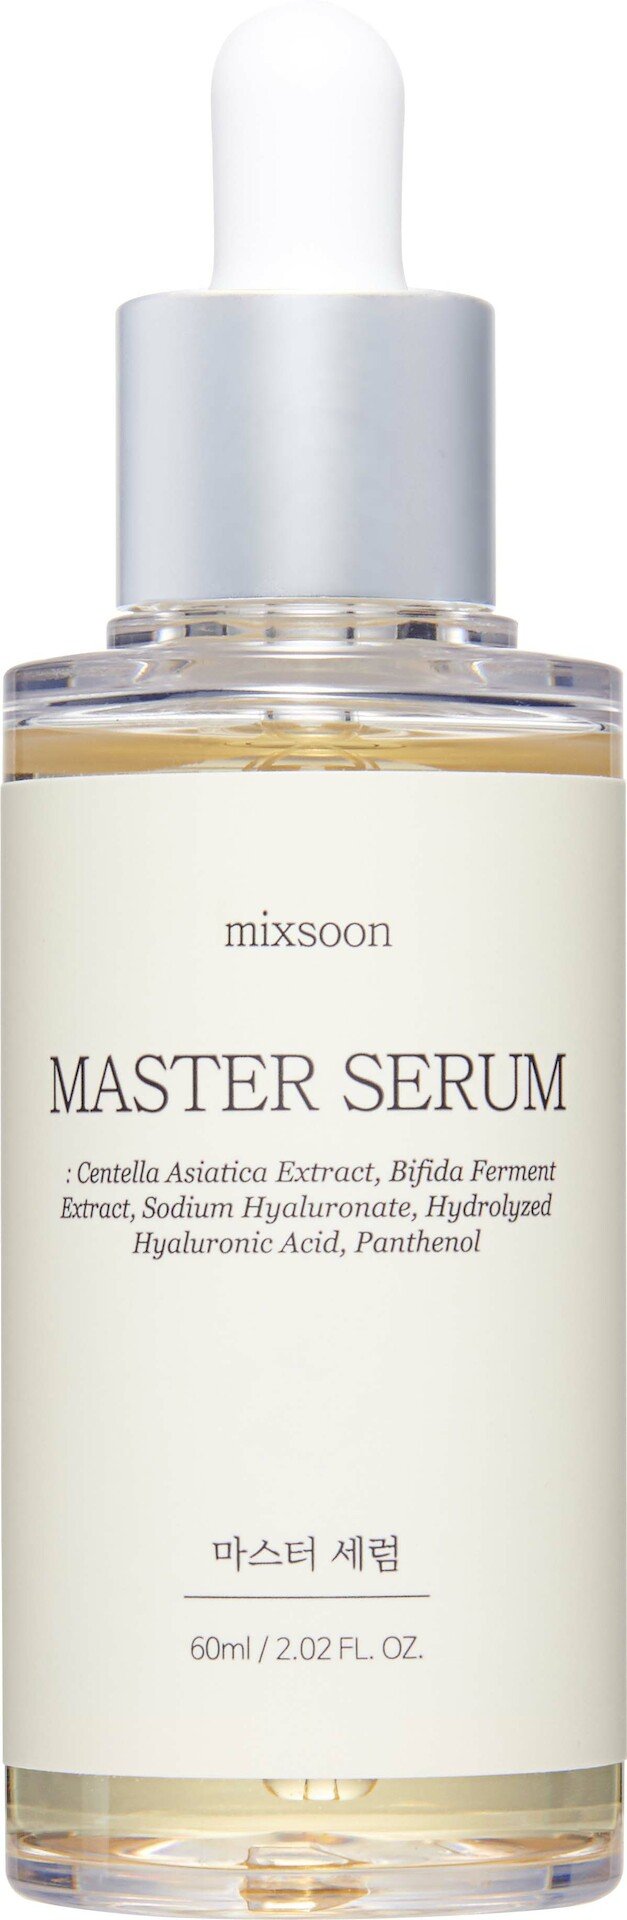 Mixsoon Master Serum 60ml